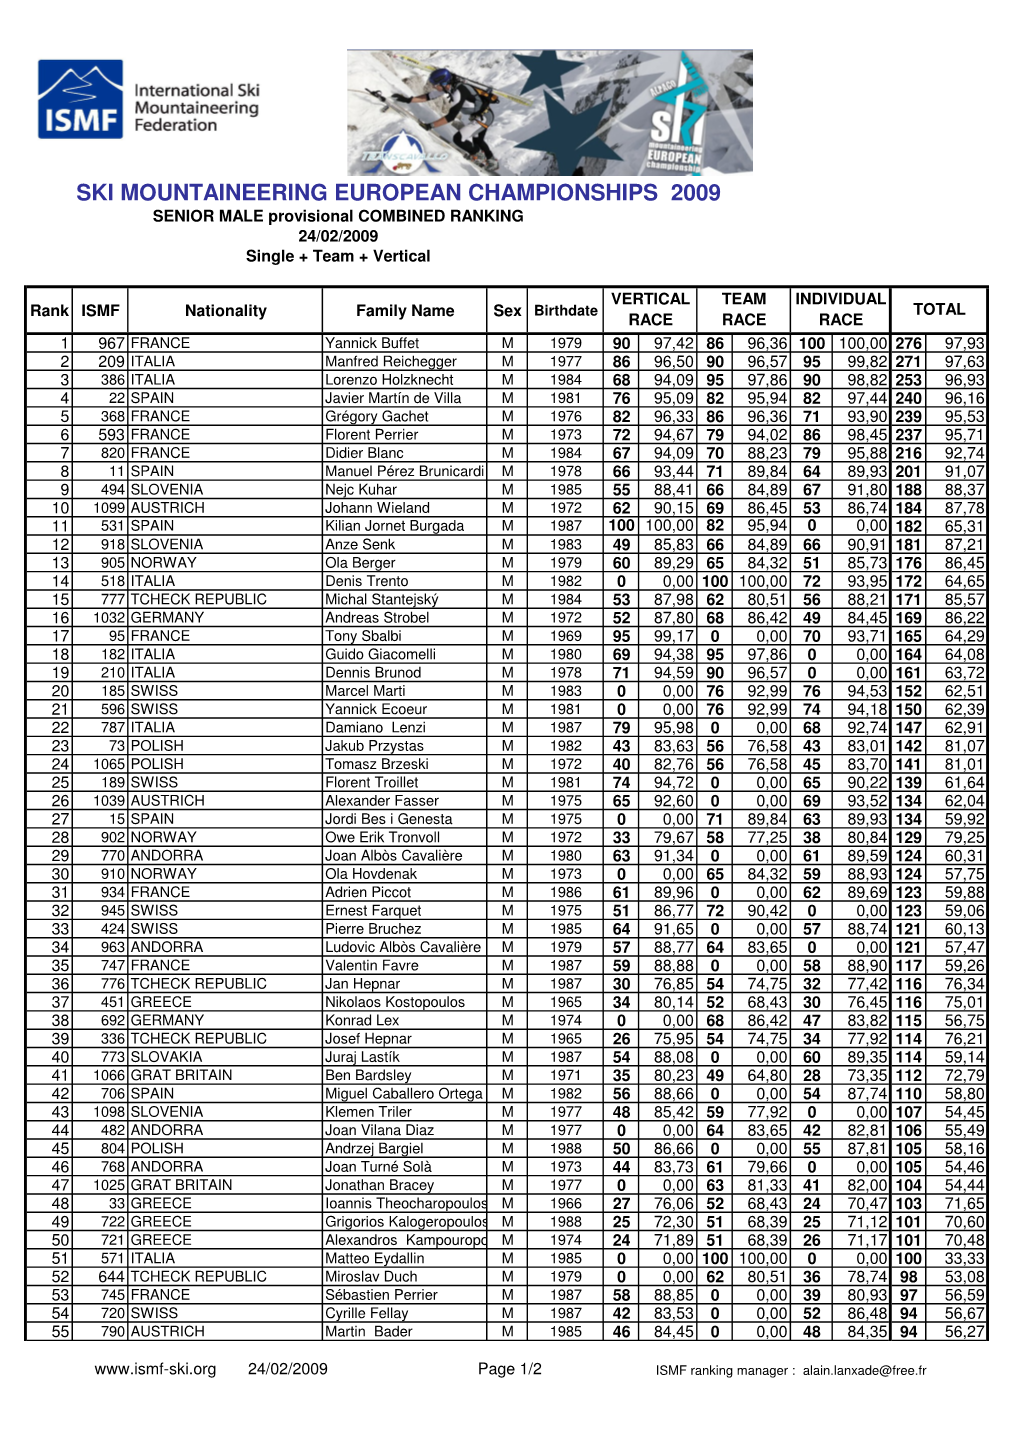 SMWCH-2009 Ranking